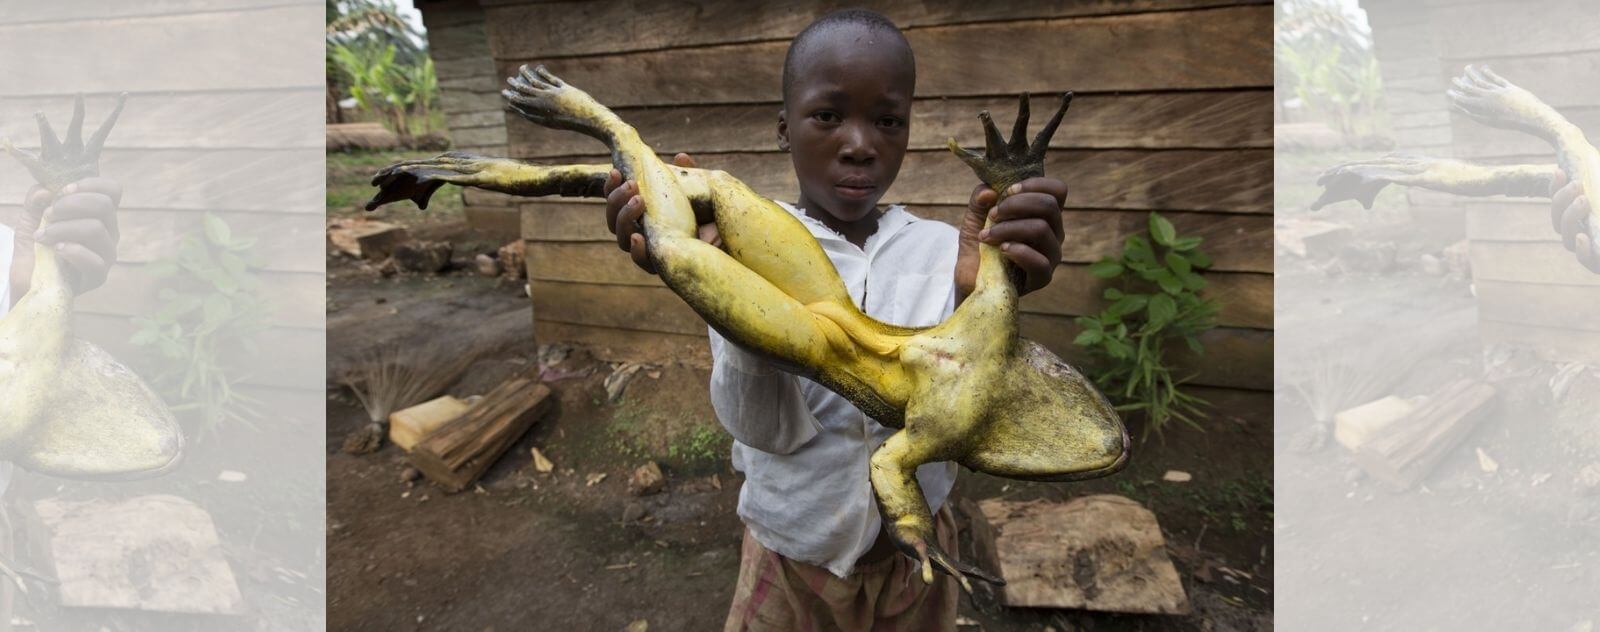 Gran rana Goliat en manos de un niño pequeño